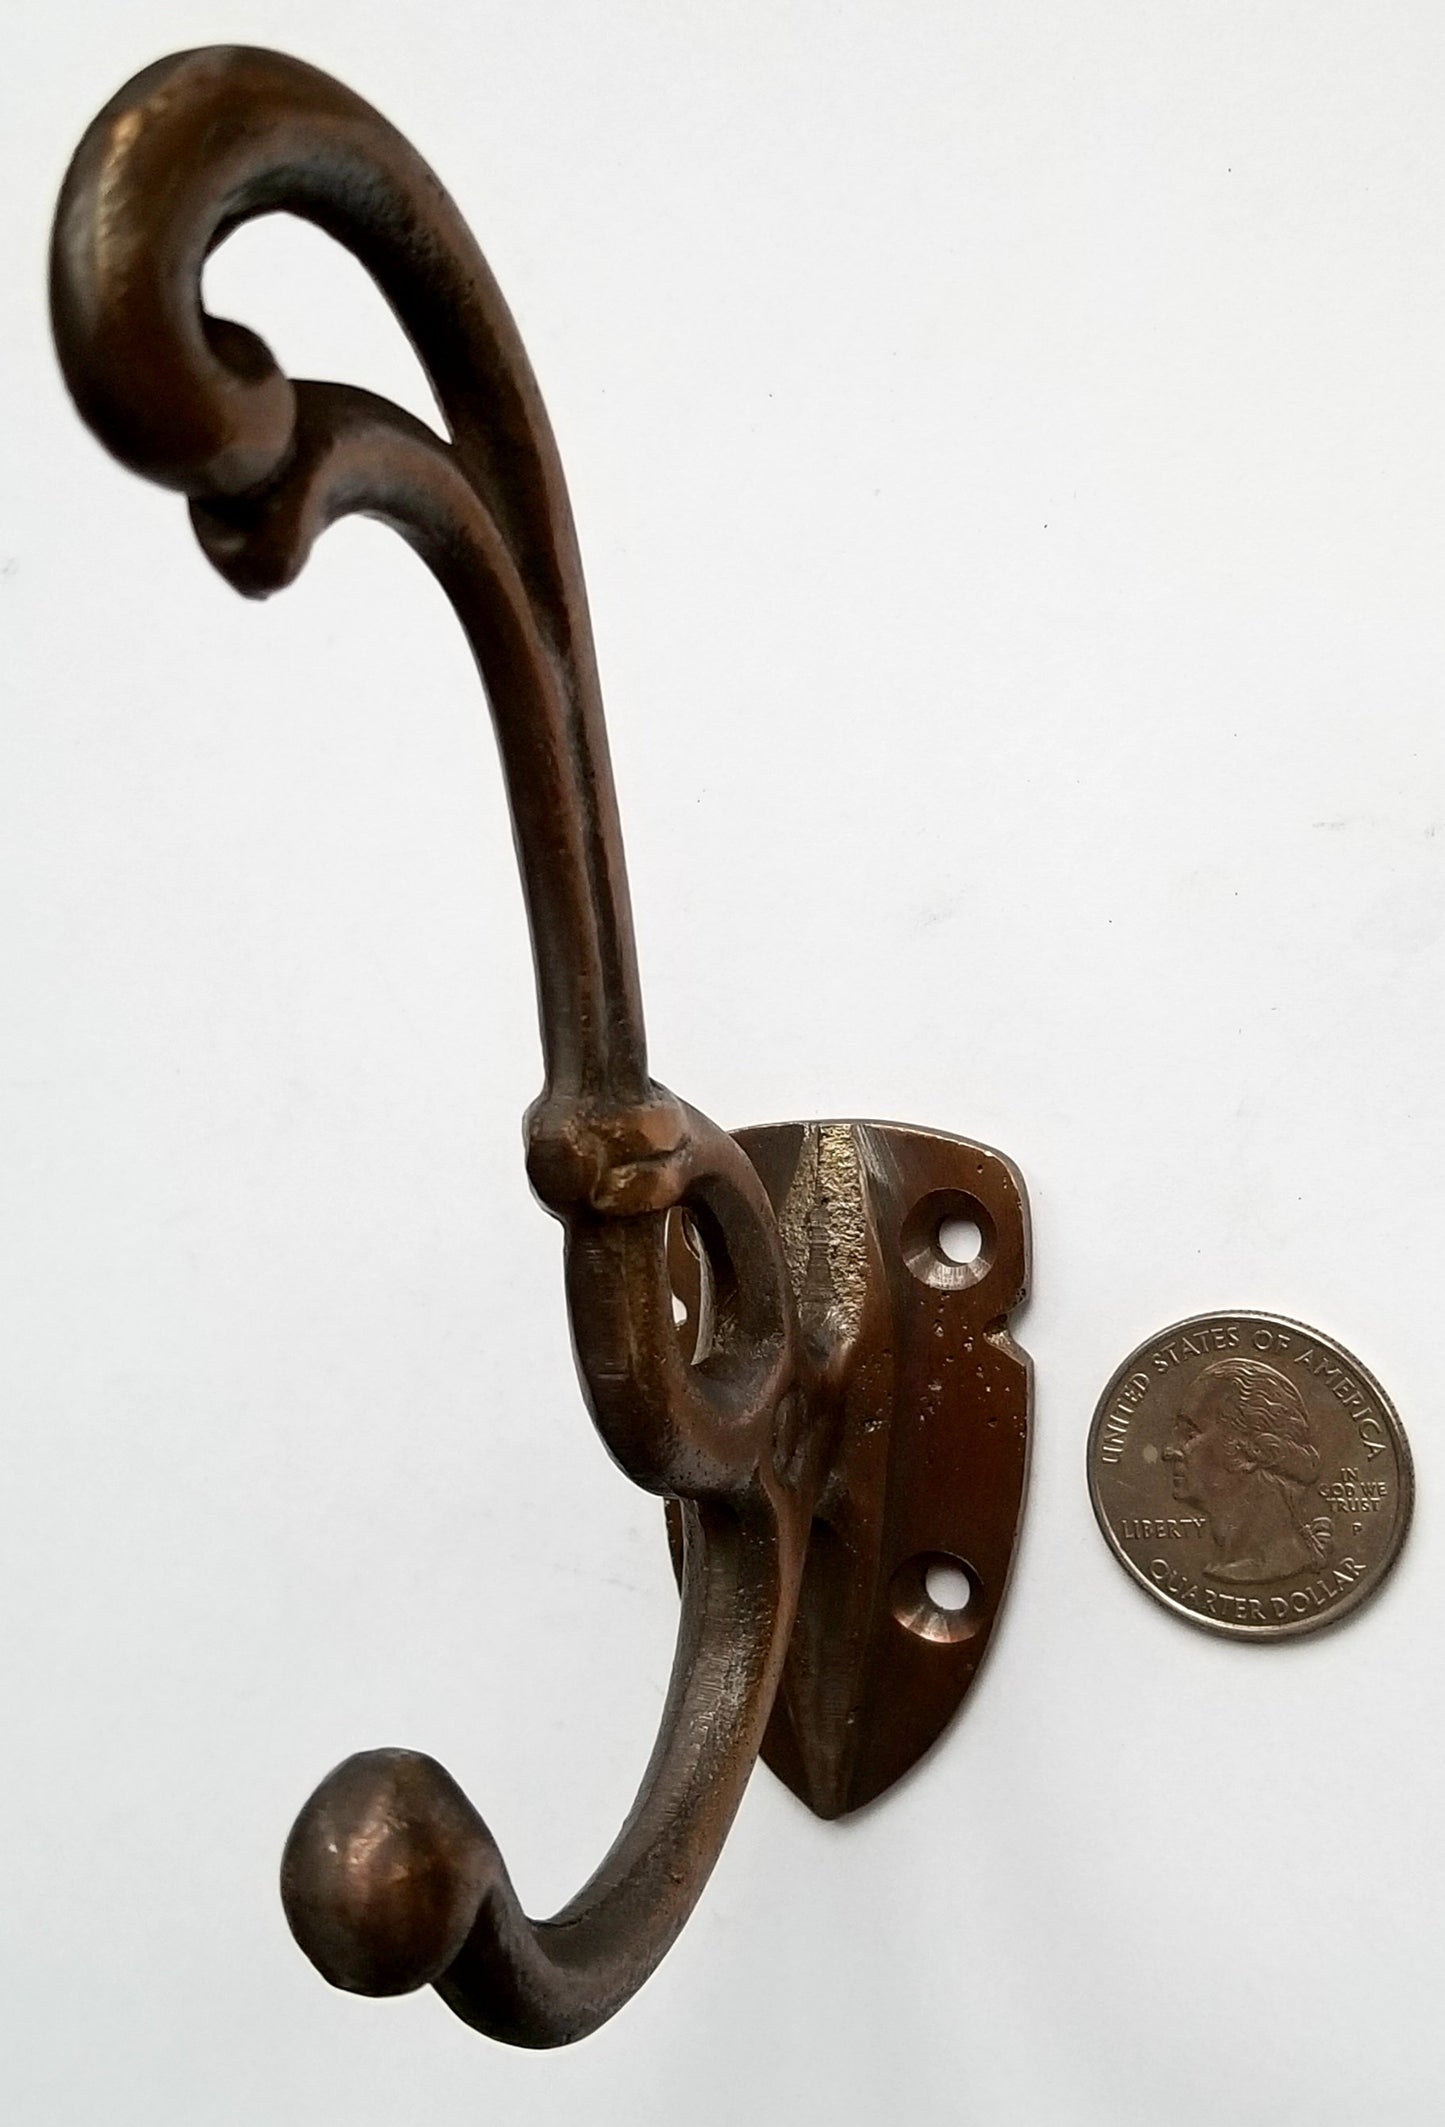 4 Rare Antique Style Brass Art Nouveau Coat Hooks Ornate Double Hooks approx 4-3/4" long #C14